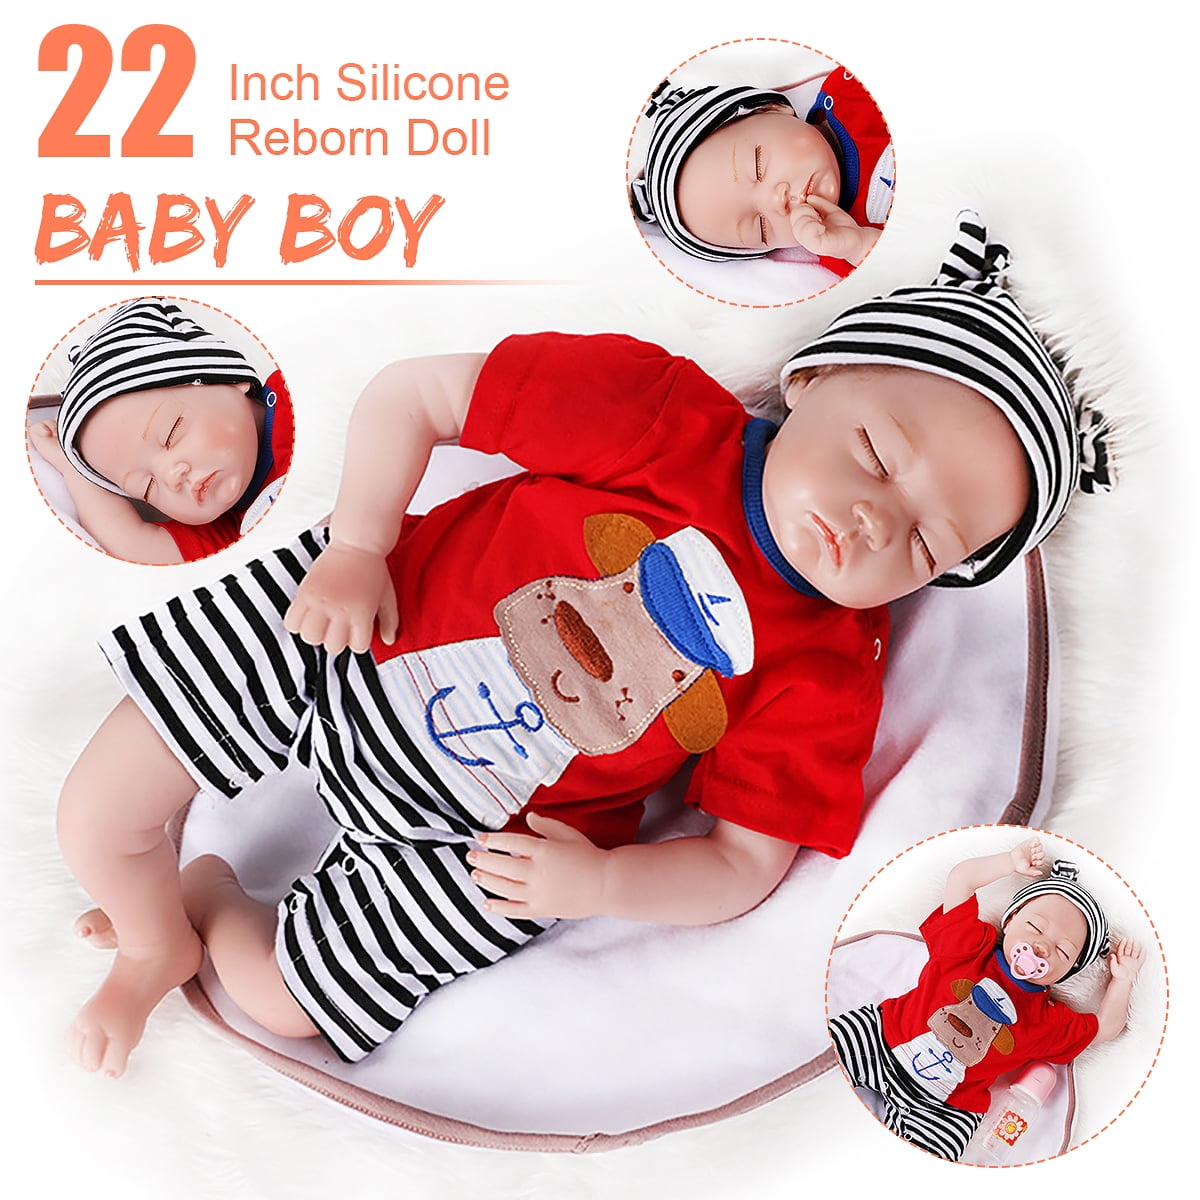 Reborn Baby Boy Doll 22" Lifelike Realistic Full Body Silicone Vinyl Washable 